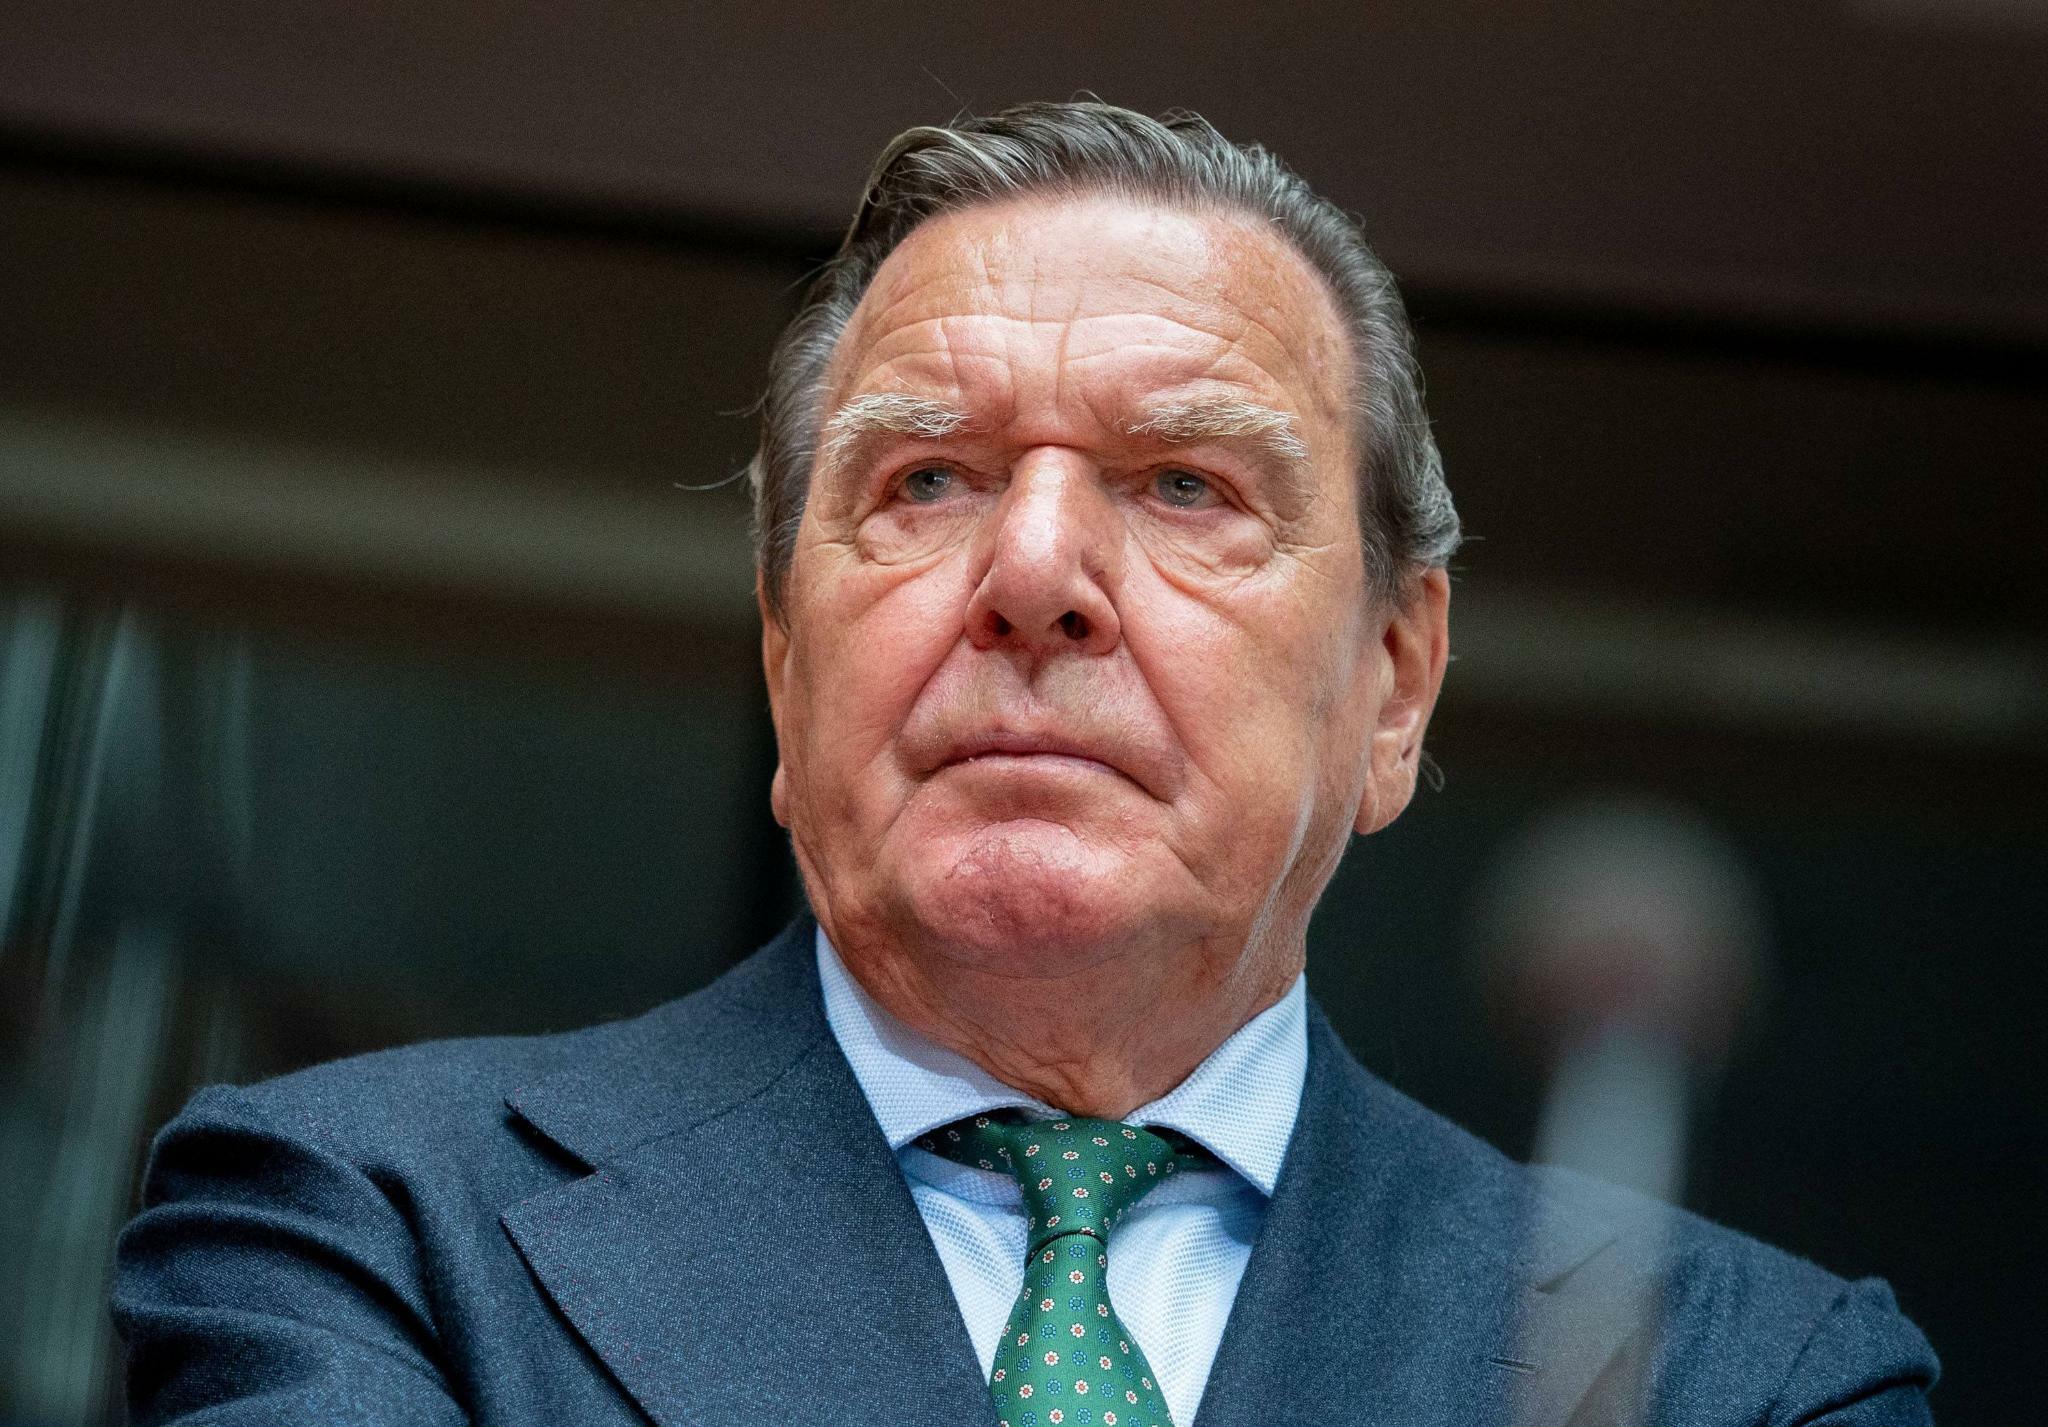 Atomangriff! Was weiß Gerhard Schröder! Putin-Kumpel Schröder spricht über Putins Atom-Pläne